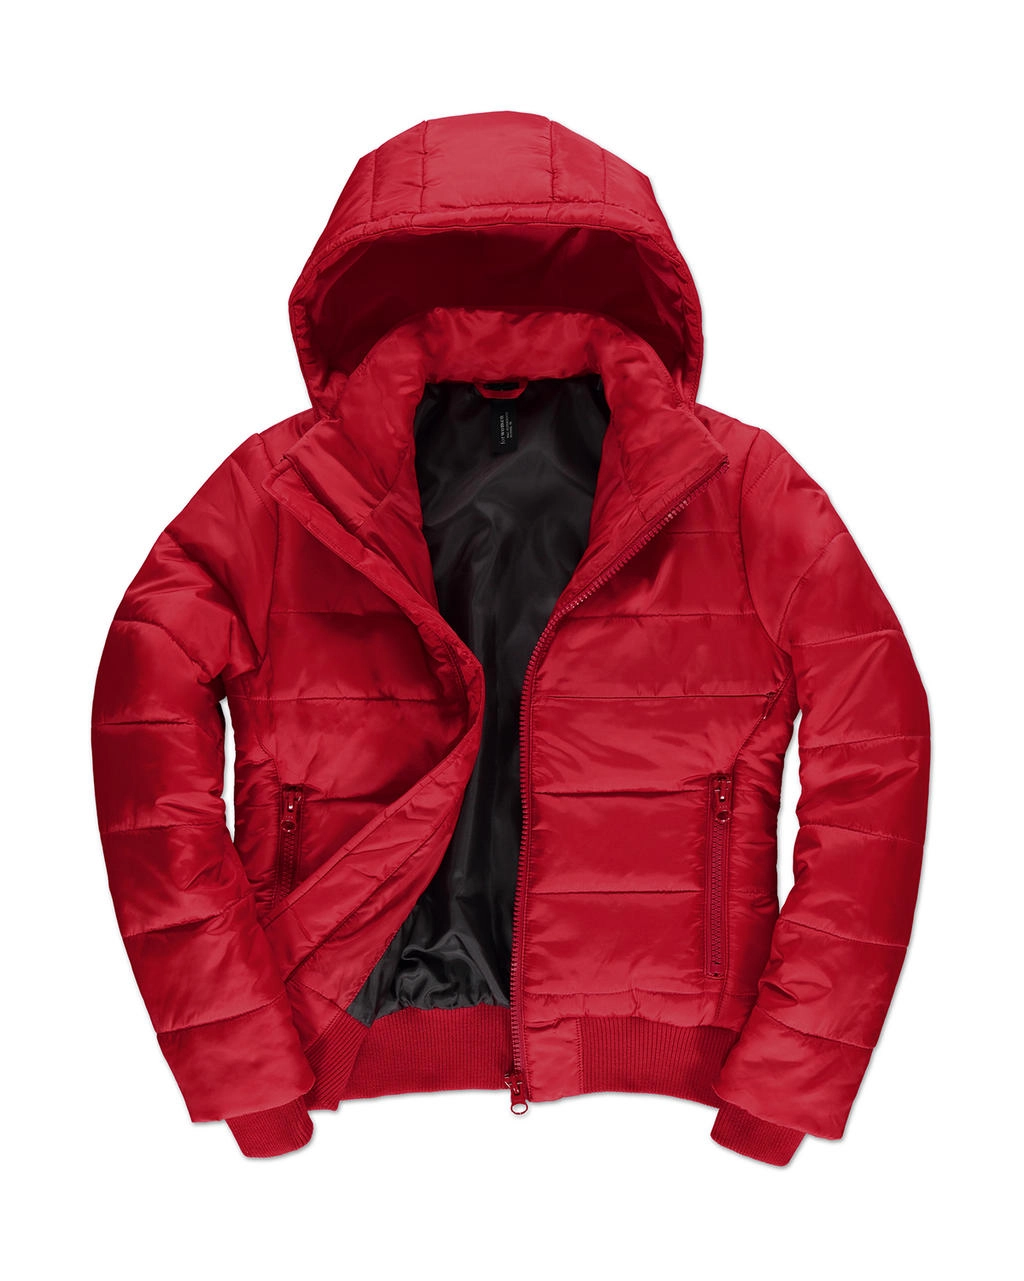 Superhood/women Jacket zum Besticken und Bedrucken in der Farbe Red/Black mit Ihren Logo, Schriftzug oder Motiv.